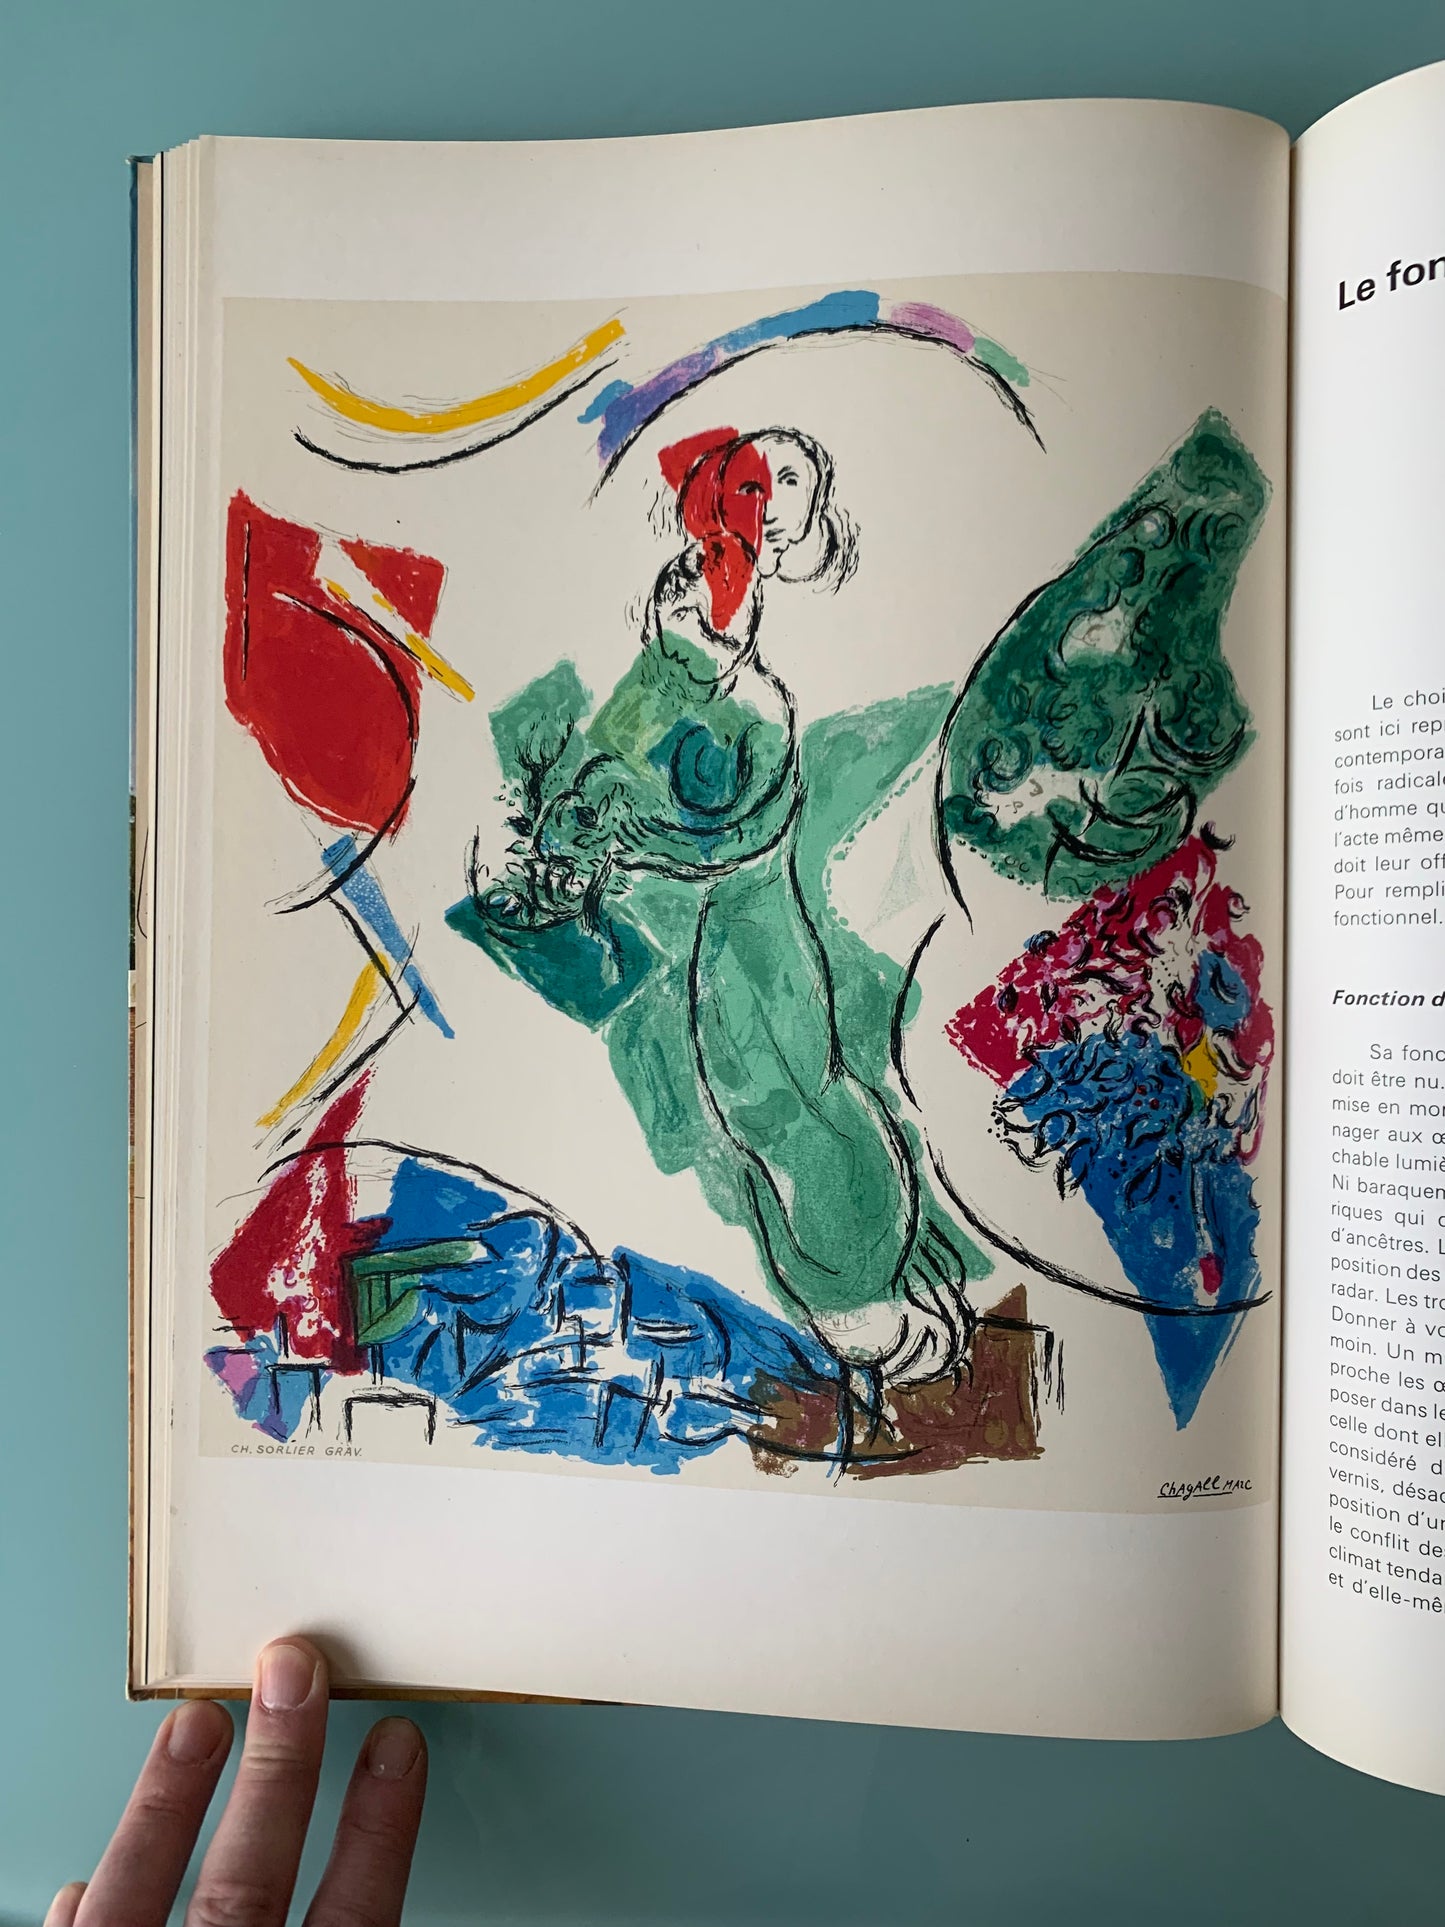 Derriere Le Miroir. “Le Fondation Marguerite et Aimé Maeght a St. Paul”, 1964